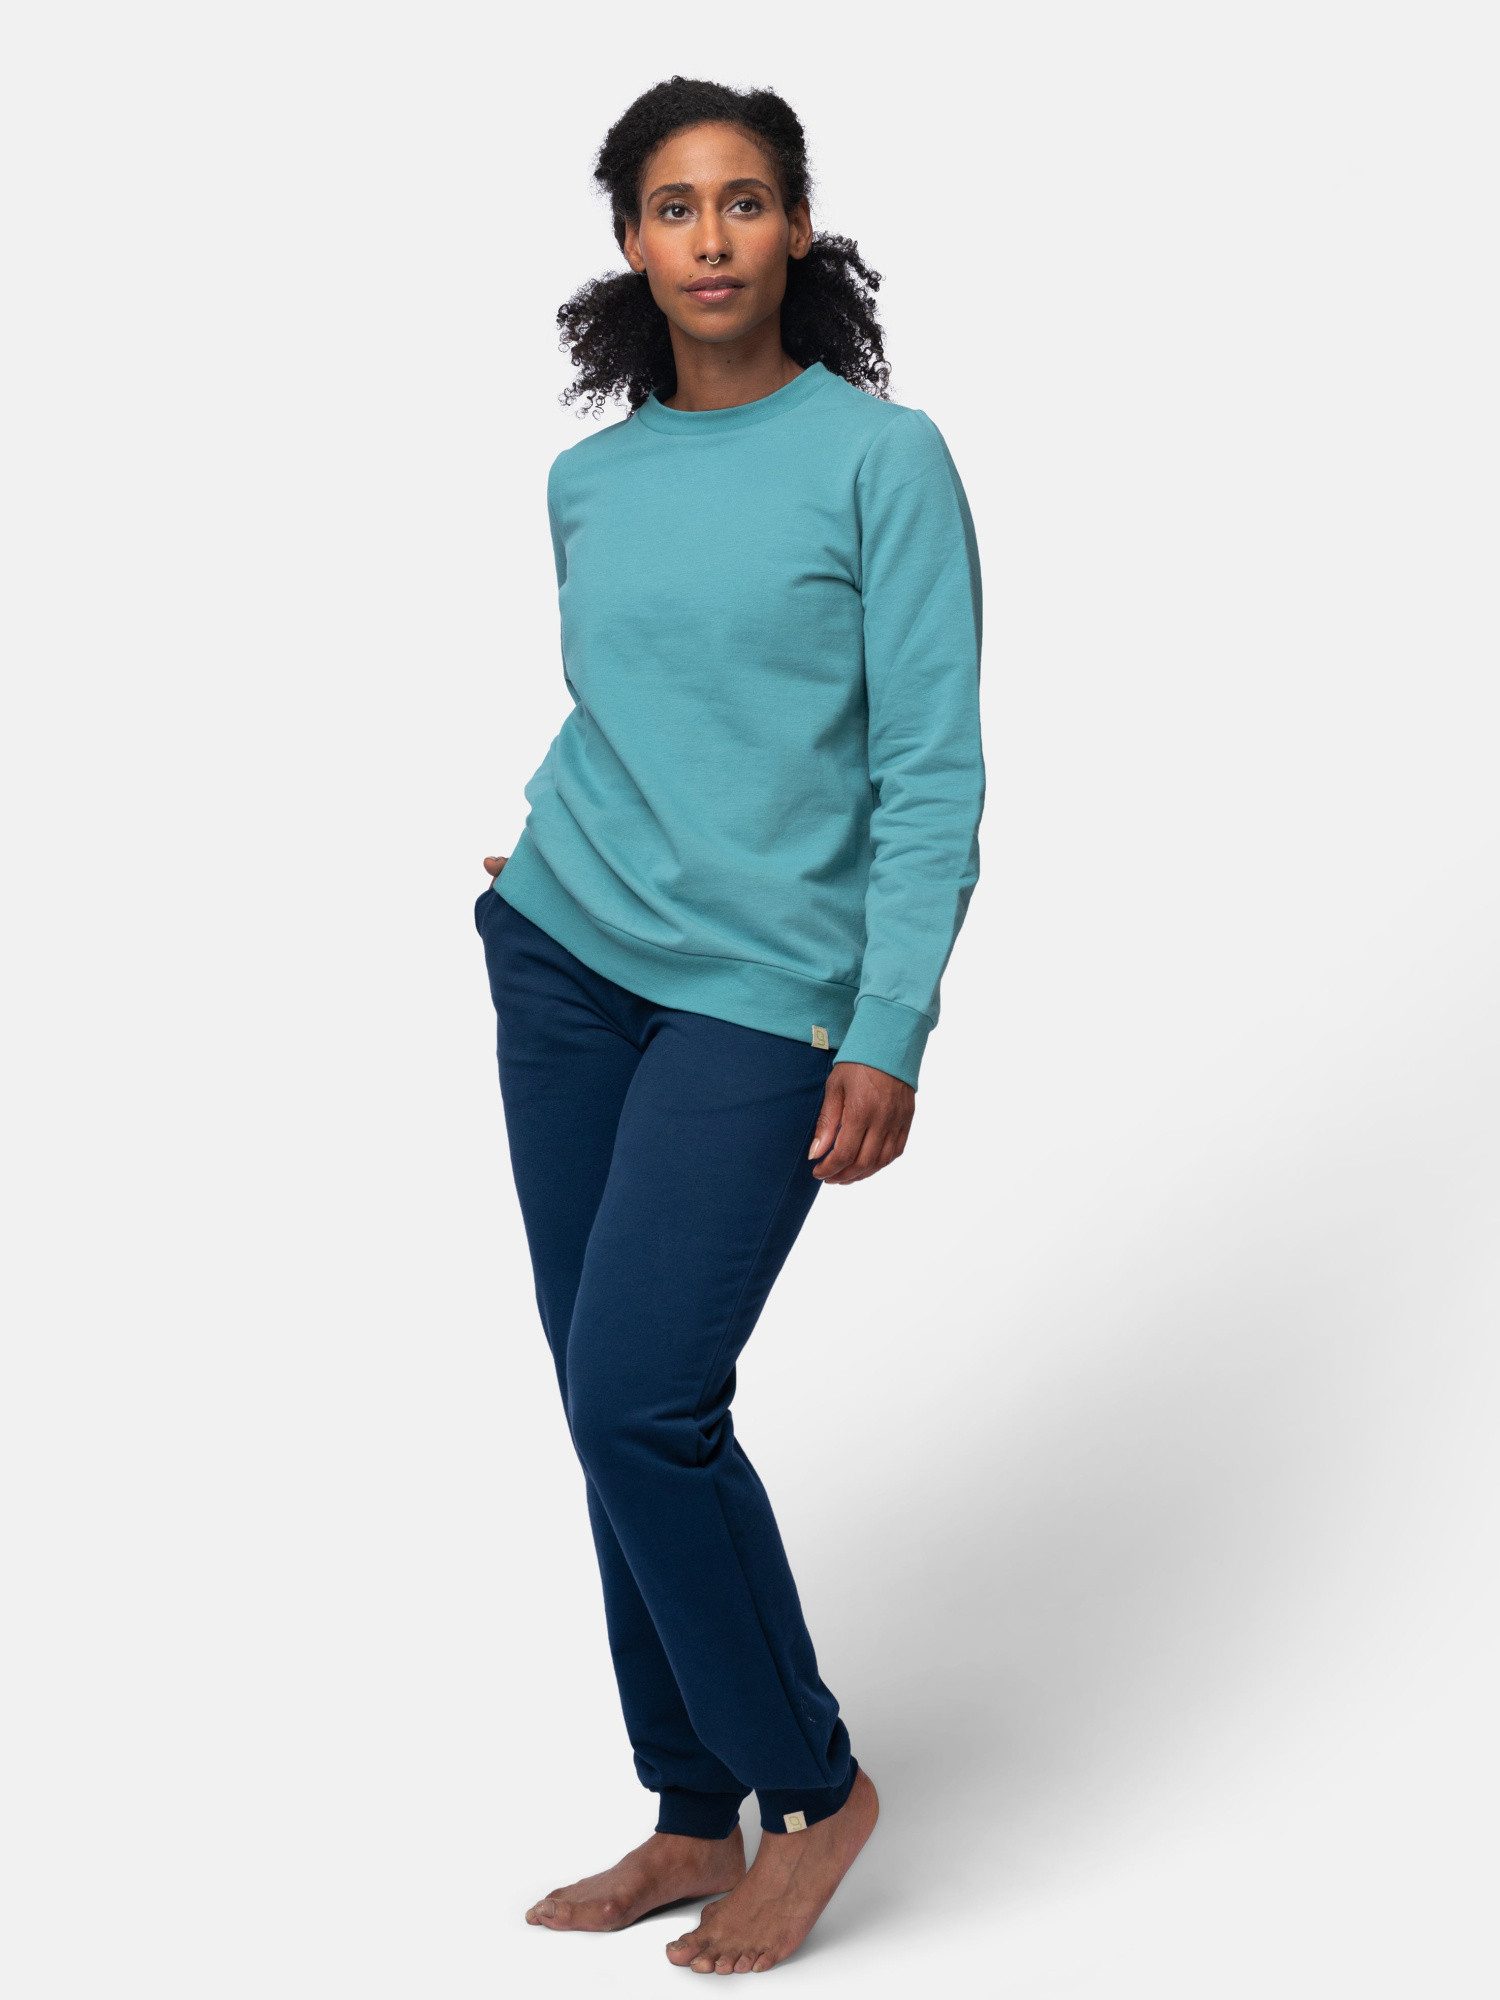 greenjama Sweatshirt weich und elastisch, Bio Baumwolle, GOTS-zertifiziert